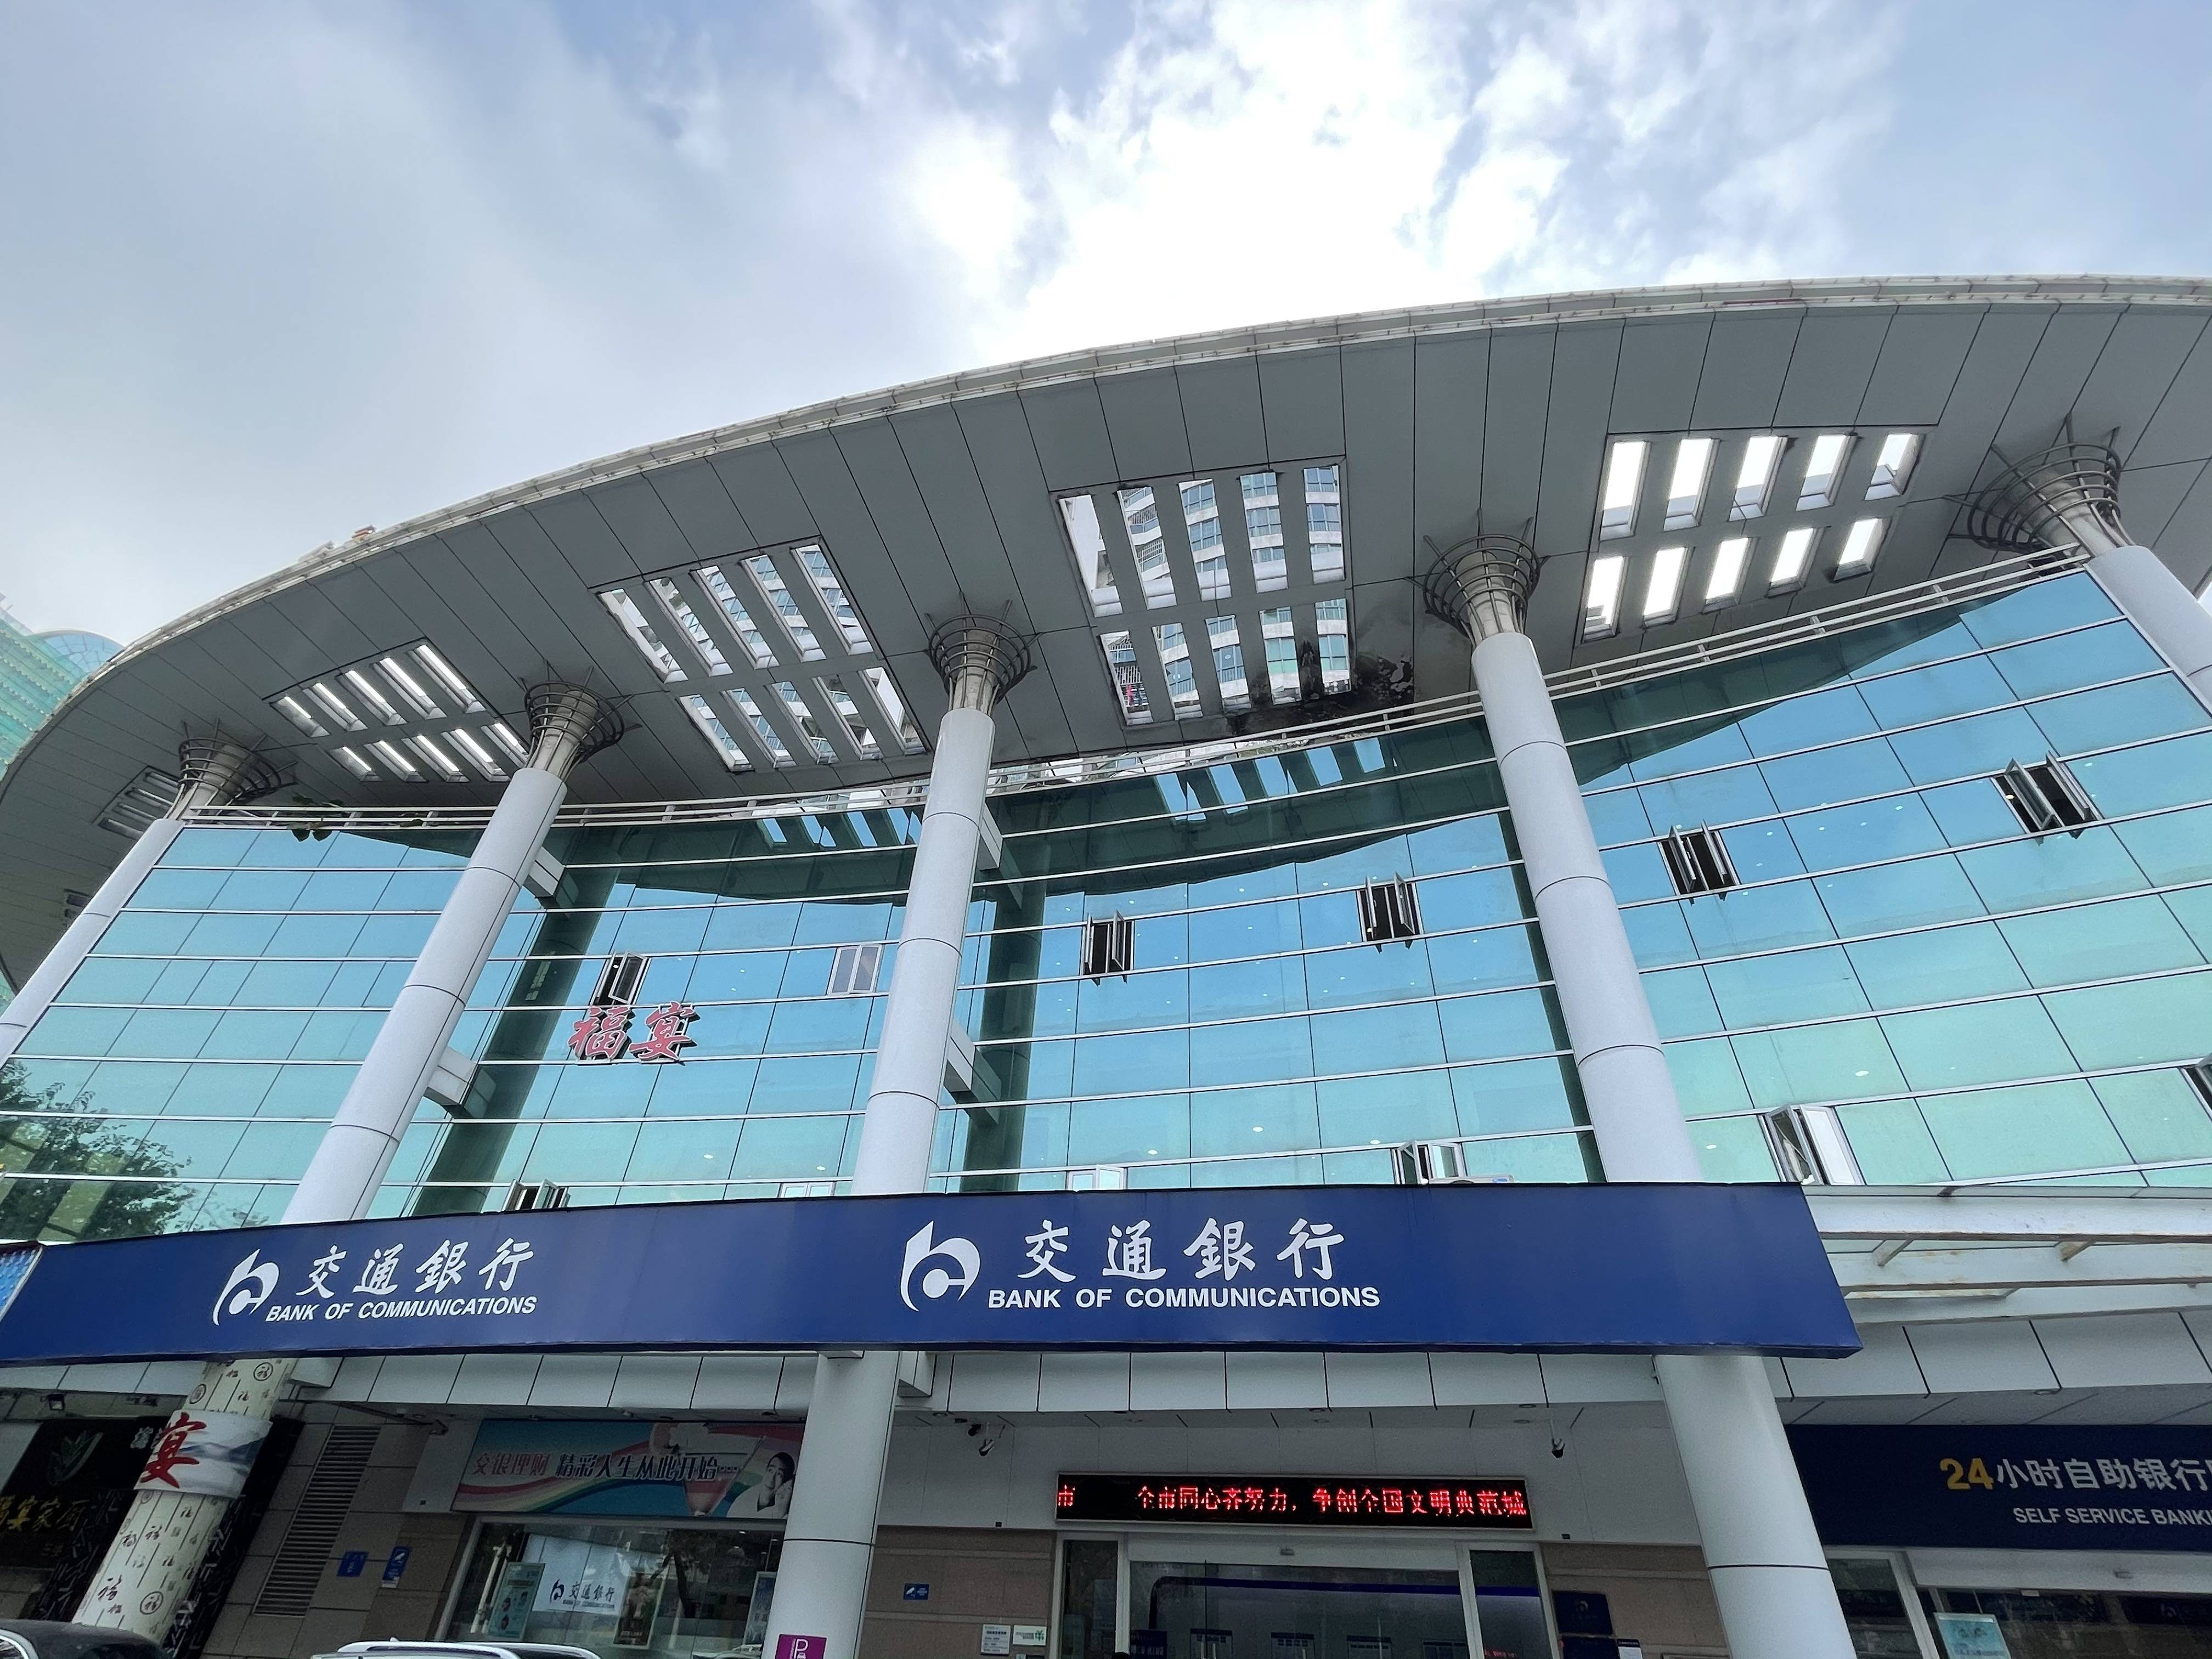 交通银行佛山禅城支行是交通银行广东省分行选定的佛山系统内首家网点